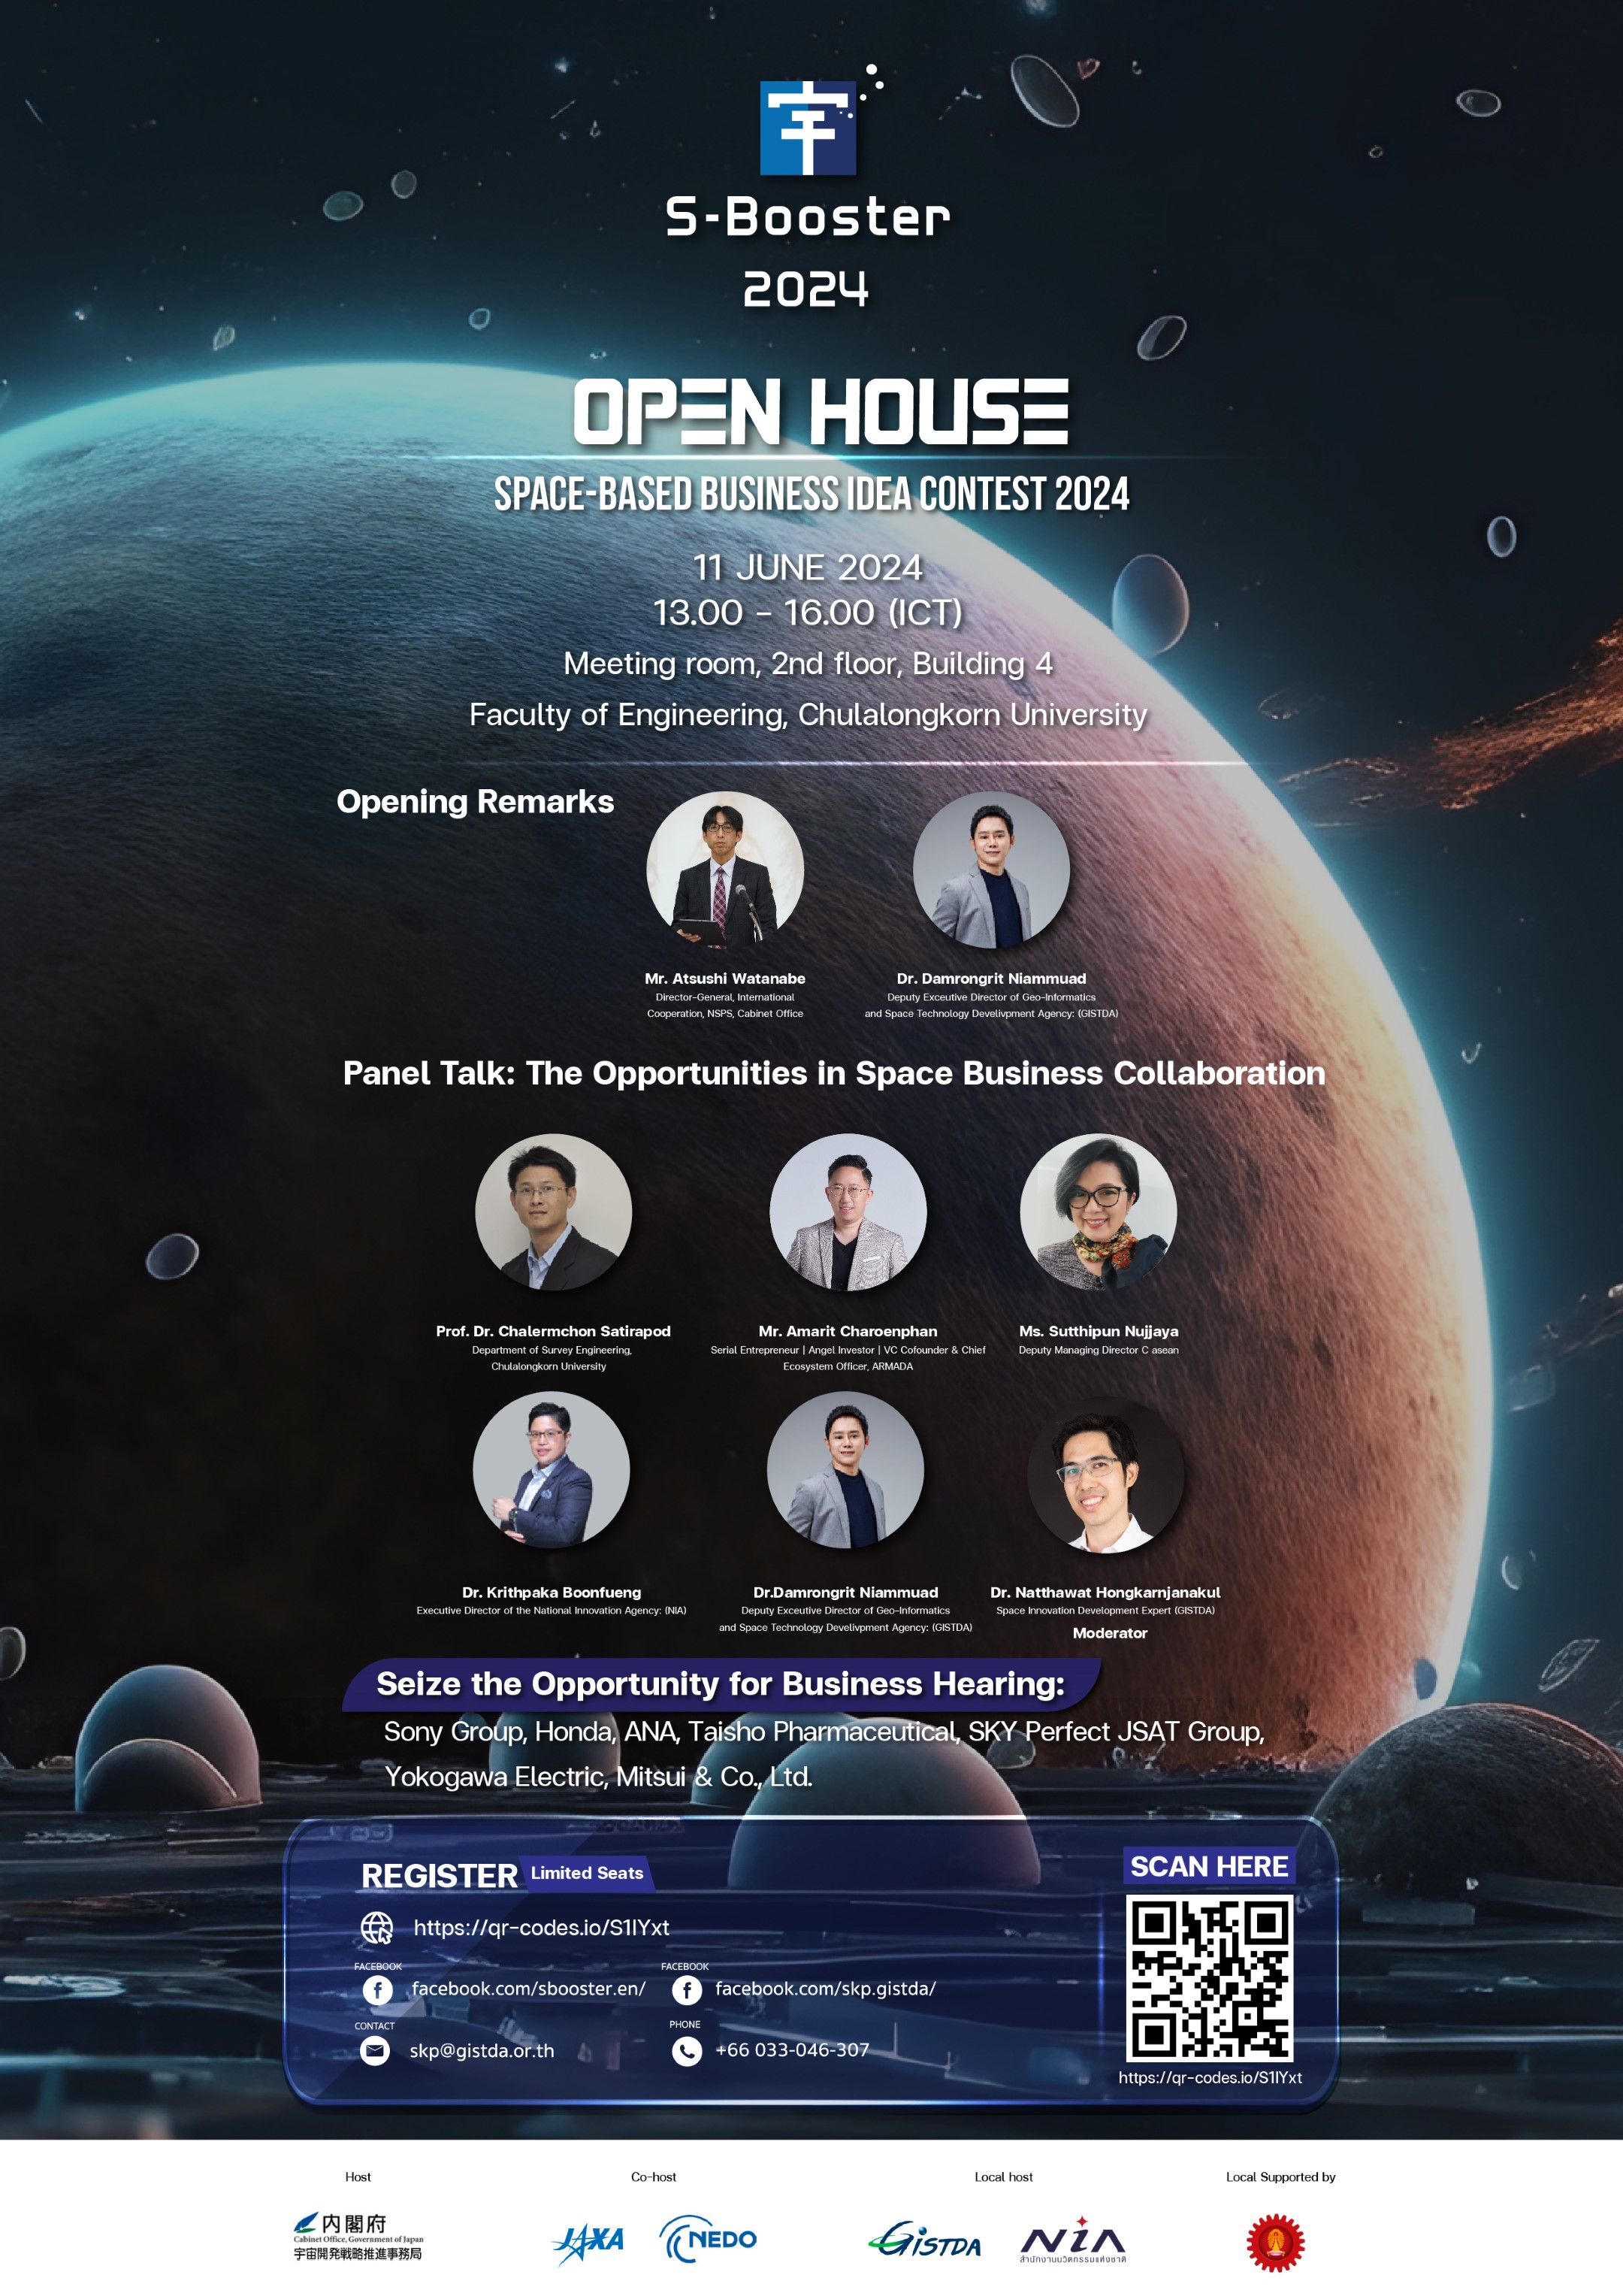 รูปภาพกิจกรรมS-Booster Open House 2024 เชิญเข้าร่วมกิจกรรมแนะแนวโครงการแข่งขันไอเดียนวัตกรรมอวกาศ